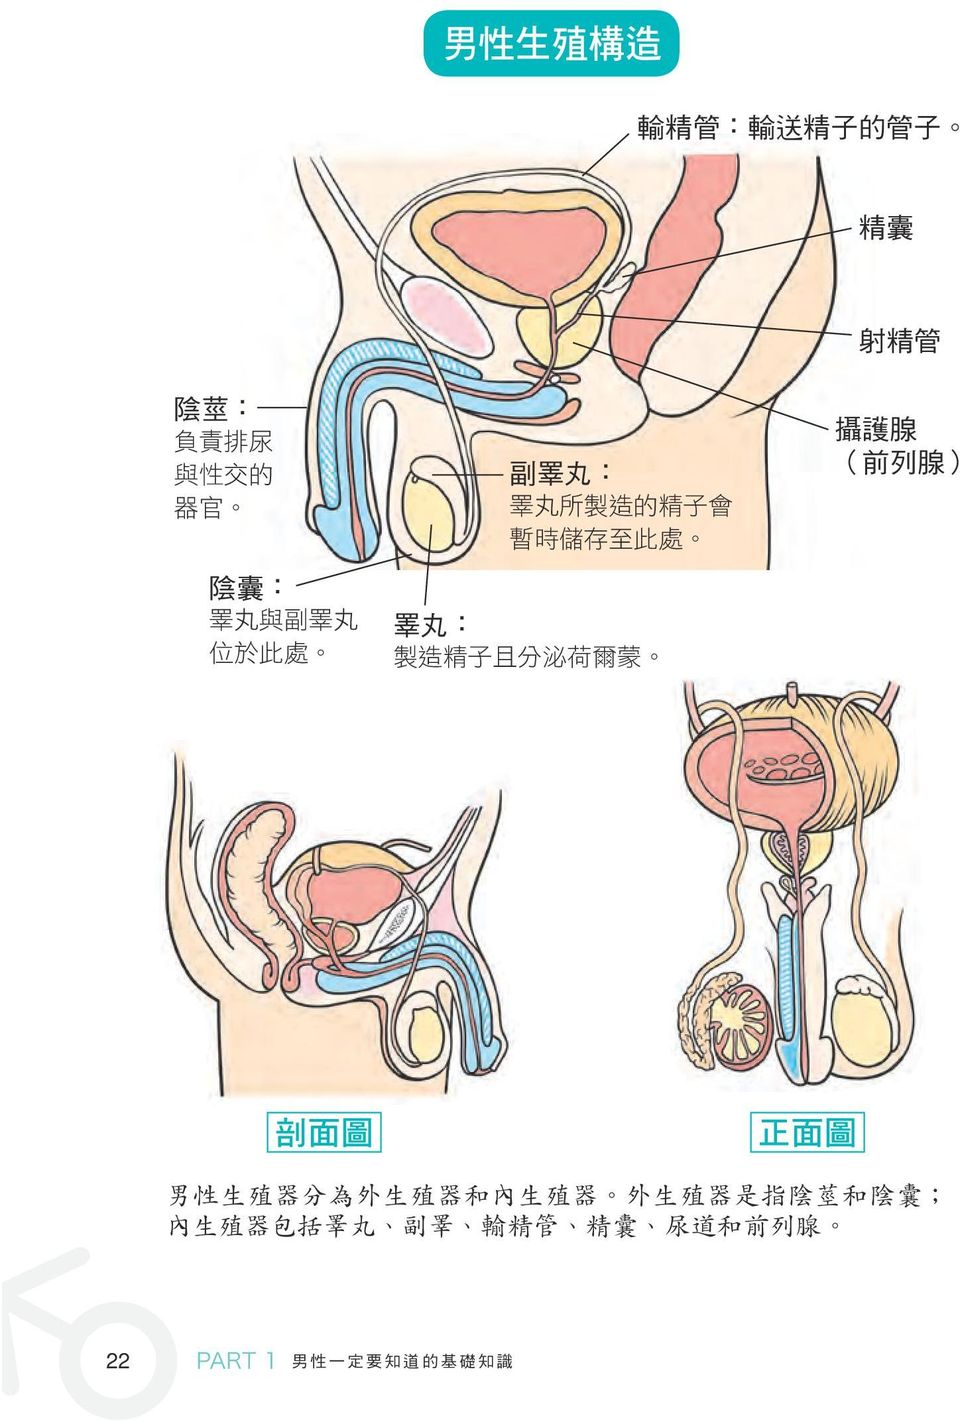 睪 丸 : 攝 護 腺 ( 前 列 腺 ) 剖 面 圖 正 面